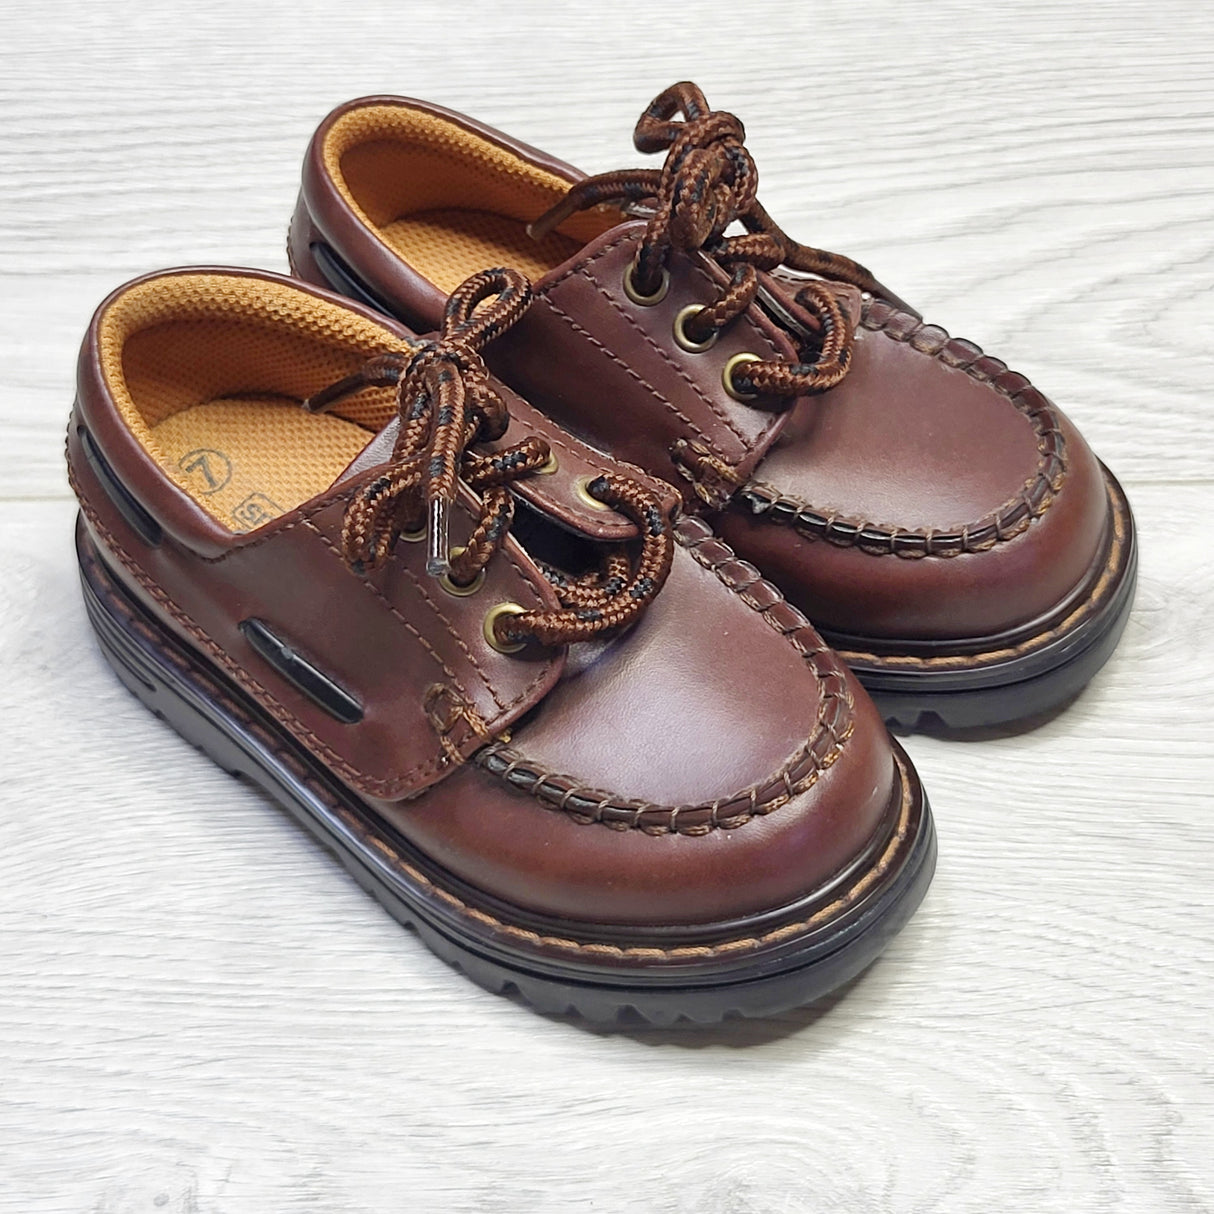 KSAL1 - Smart Fit brown lace up dress shoes, size 7